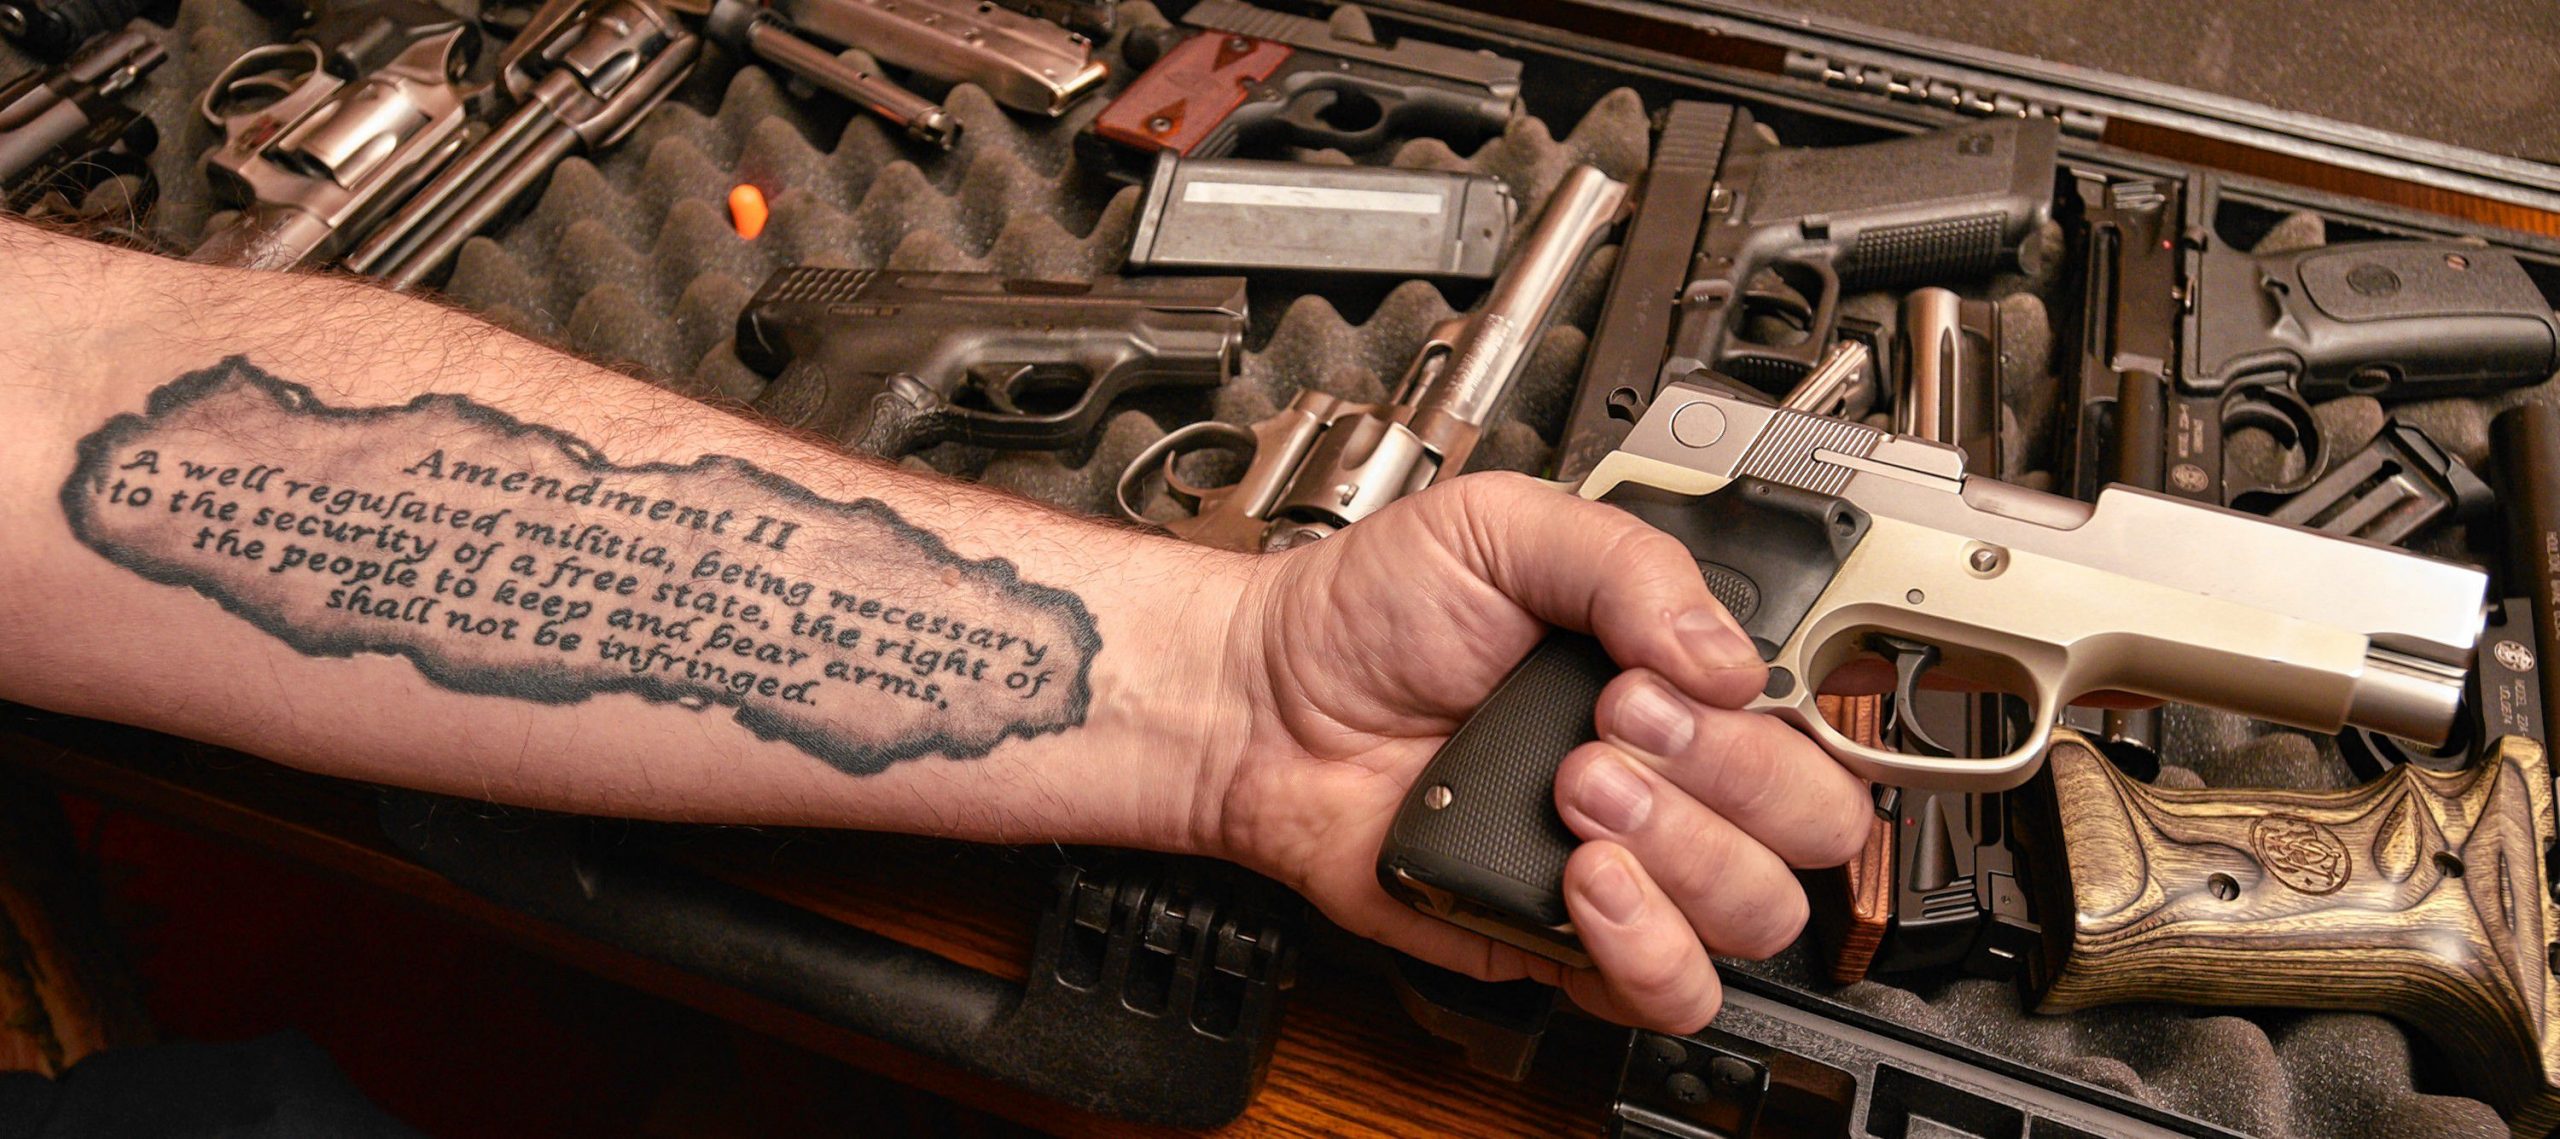 2nd amendment tattoo image